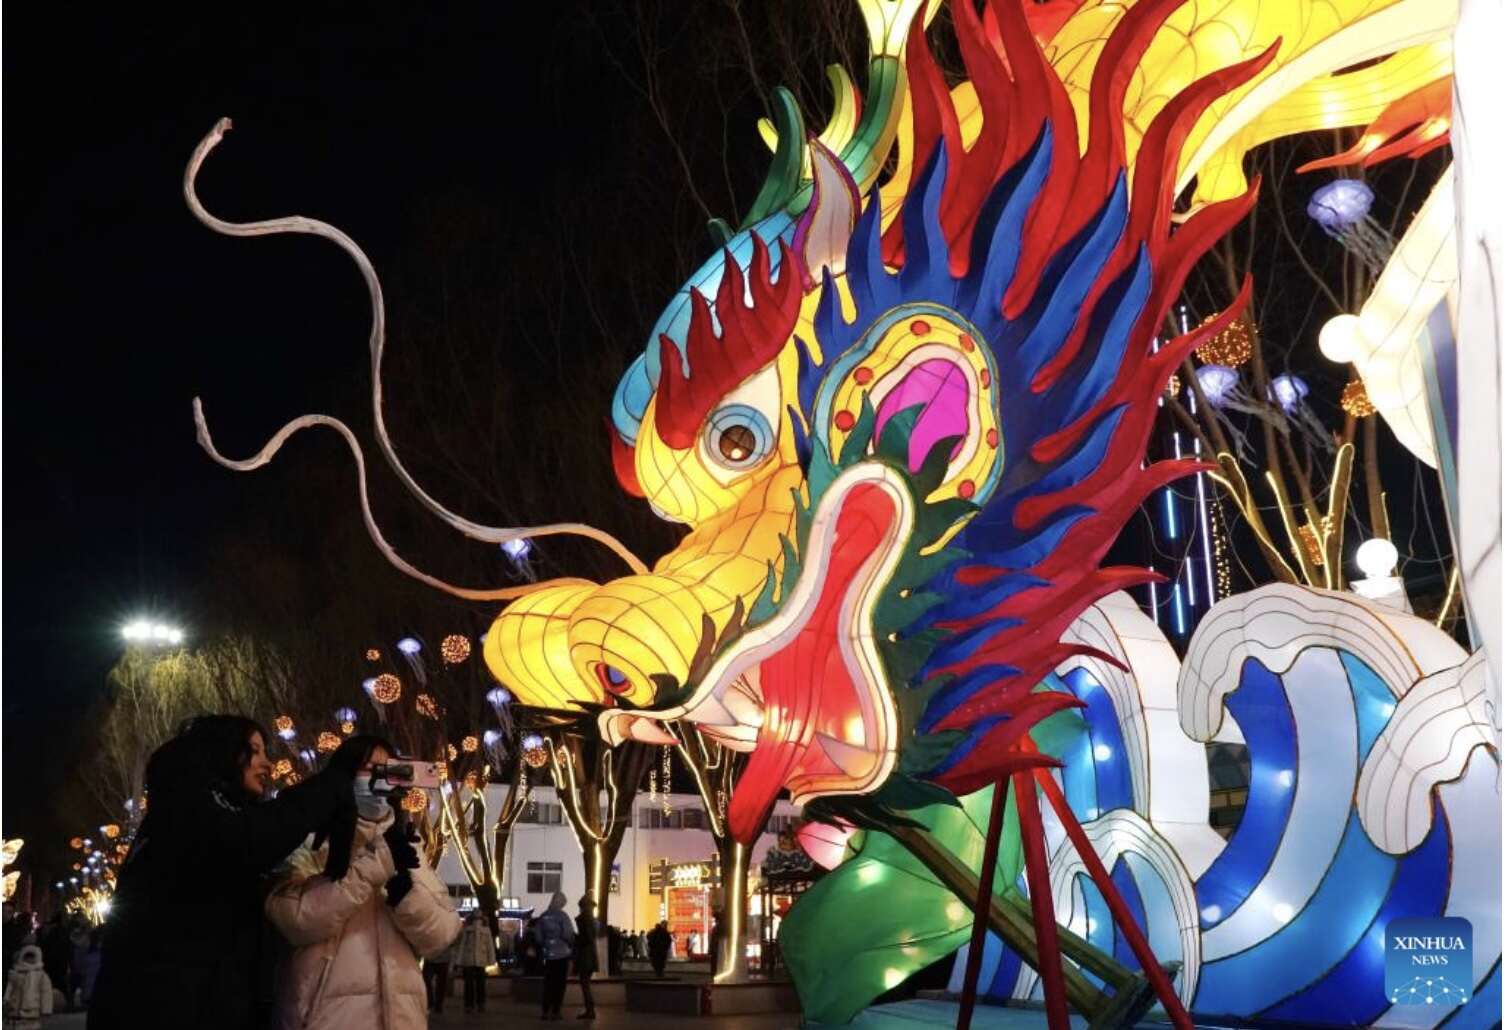  Đèn lồng hình đầu rồng trang trí công phu ở đô thị Tần Hoàng Đảo, tỉnh Hà Bắc, phía bắc Trung Quốc. Ảnh: Xinhua